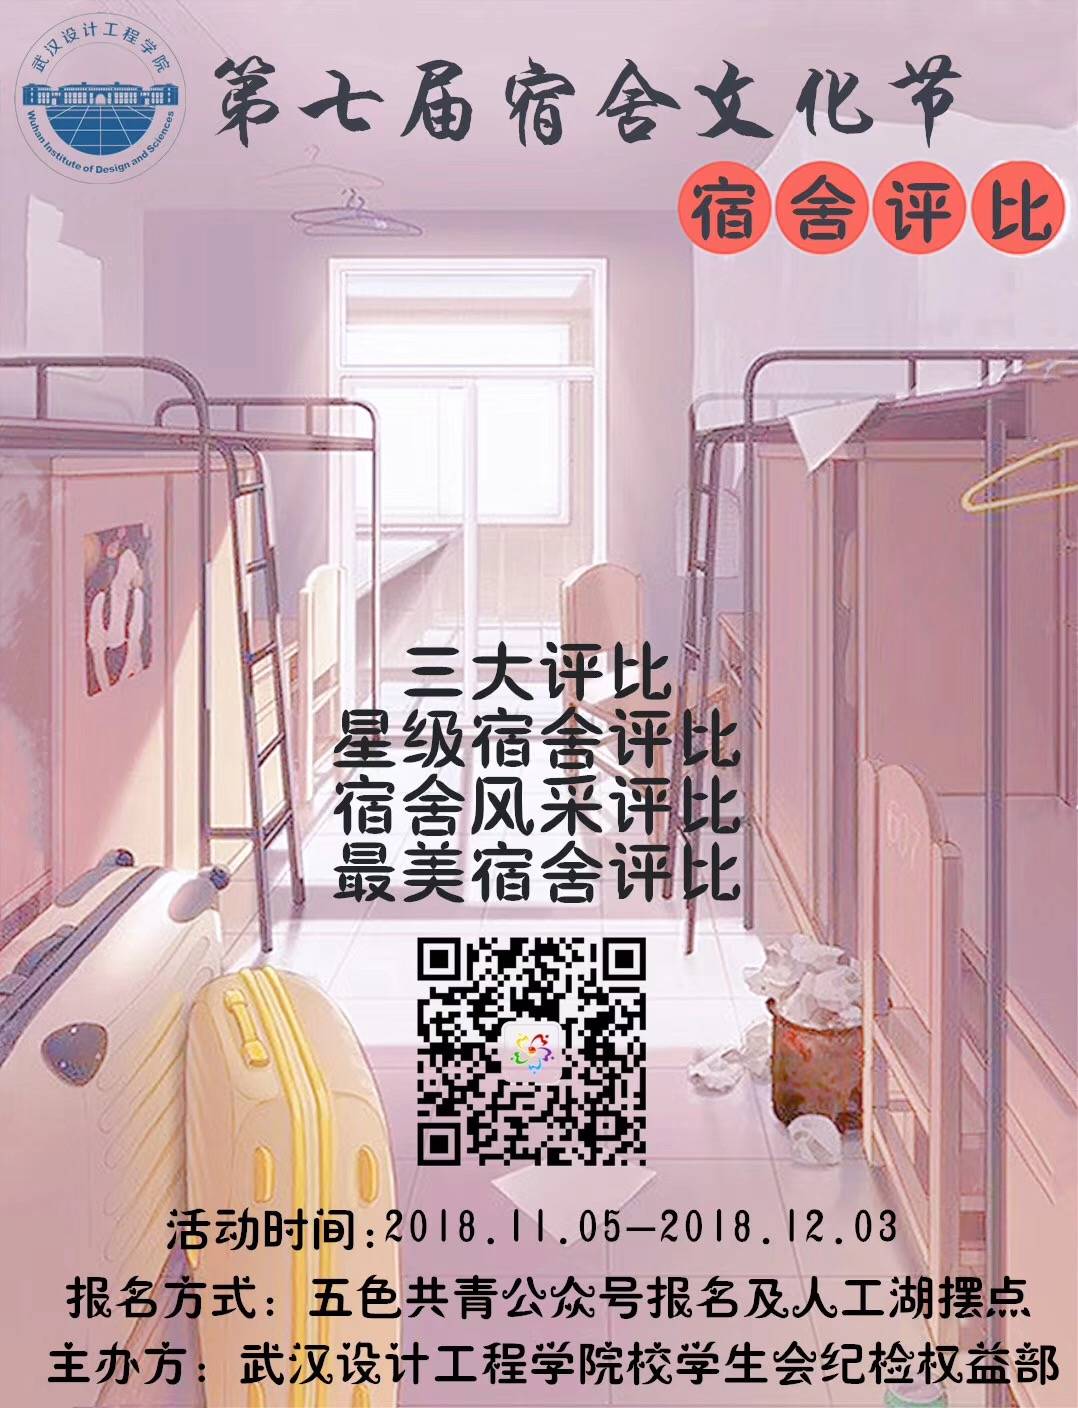 武汉设计工程学院第七届宿舍文化节活动海报-2